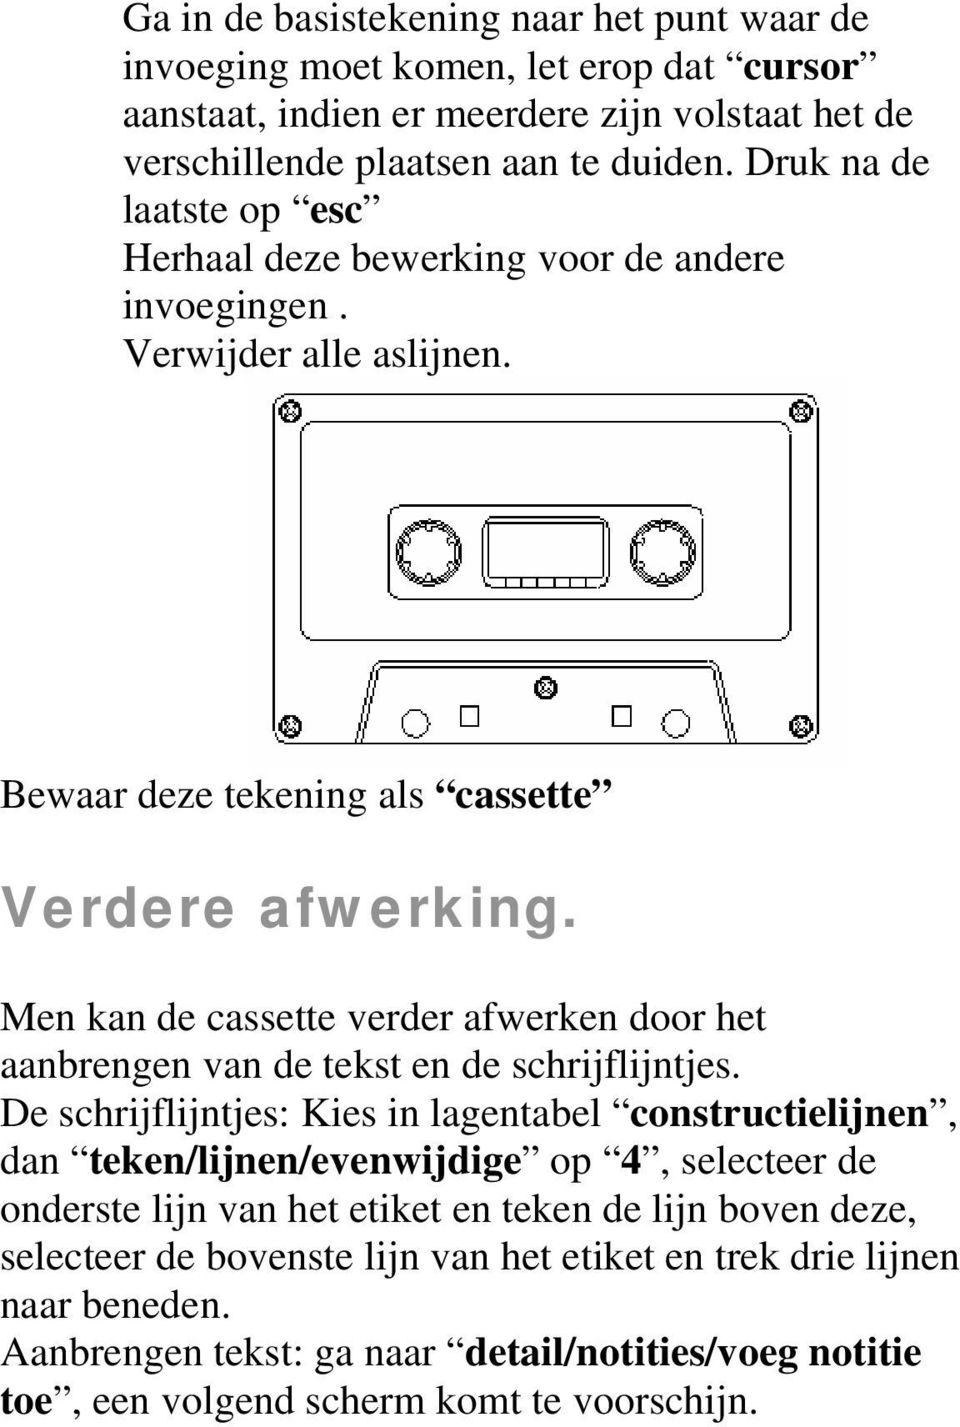 Men kan de cassette verder afwerken door het aanbrengen van de tekst en de schrijflijntjes.